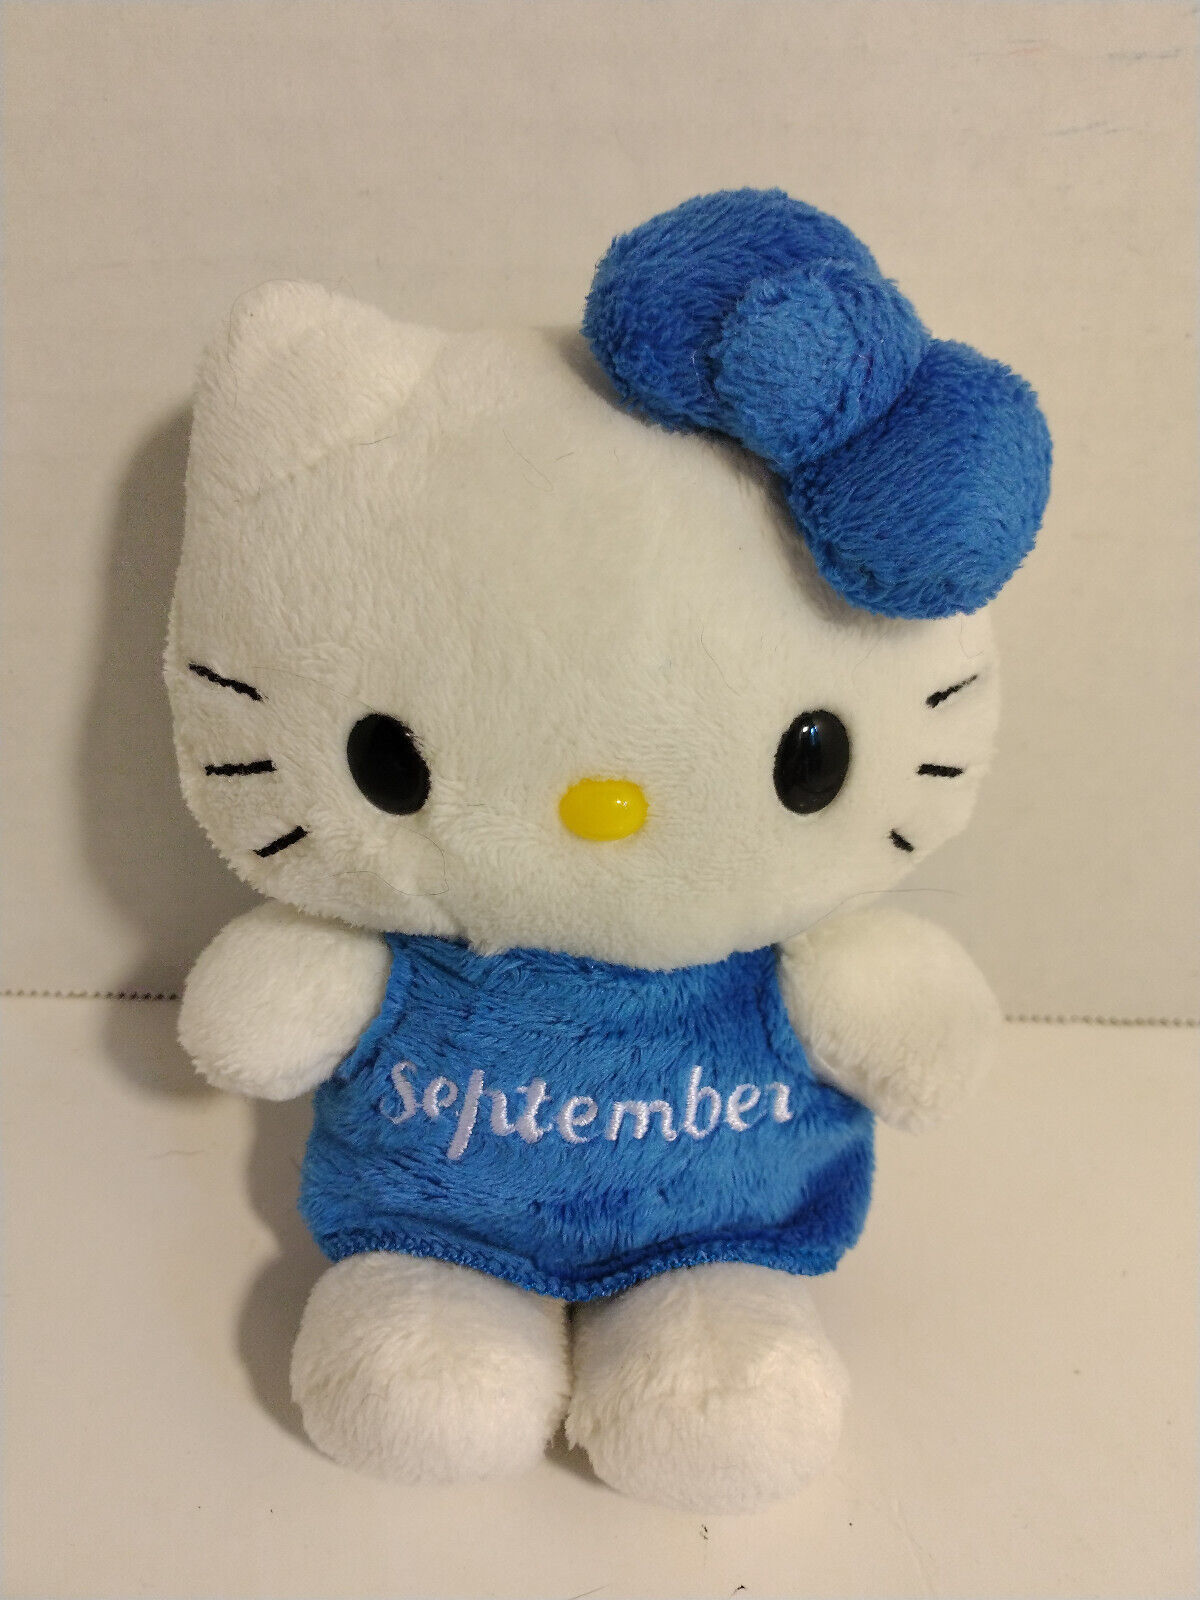 Hello Kitty Sanrio 2011 September 5" Plush Toy - $20.50